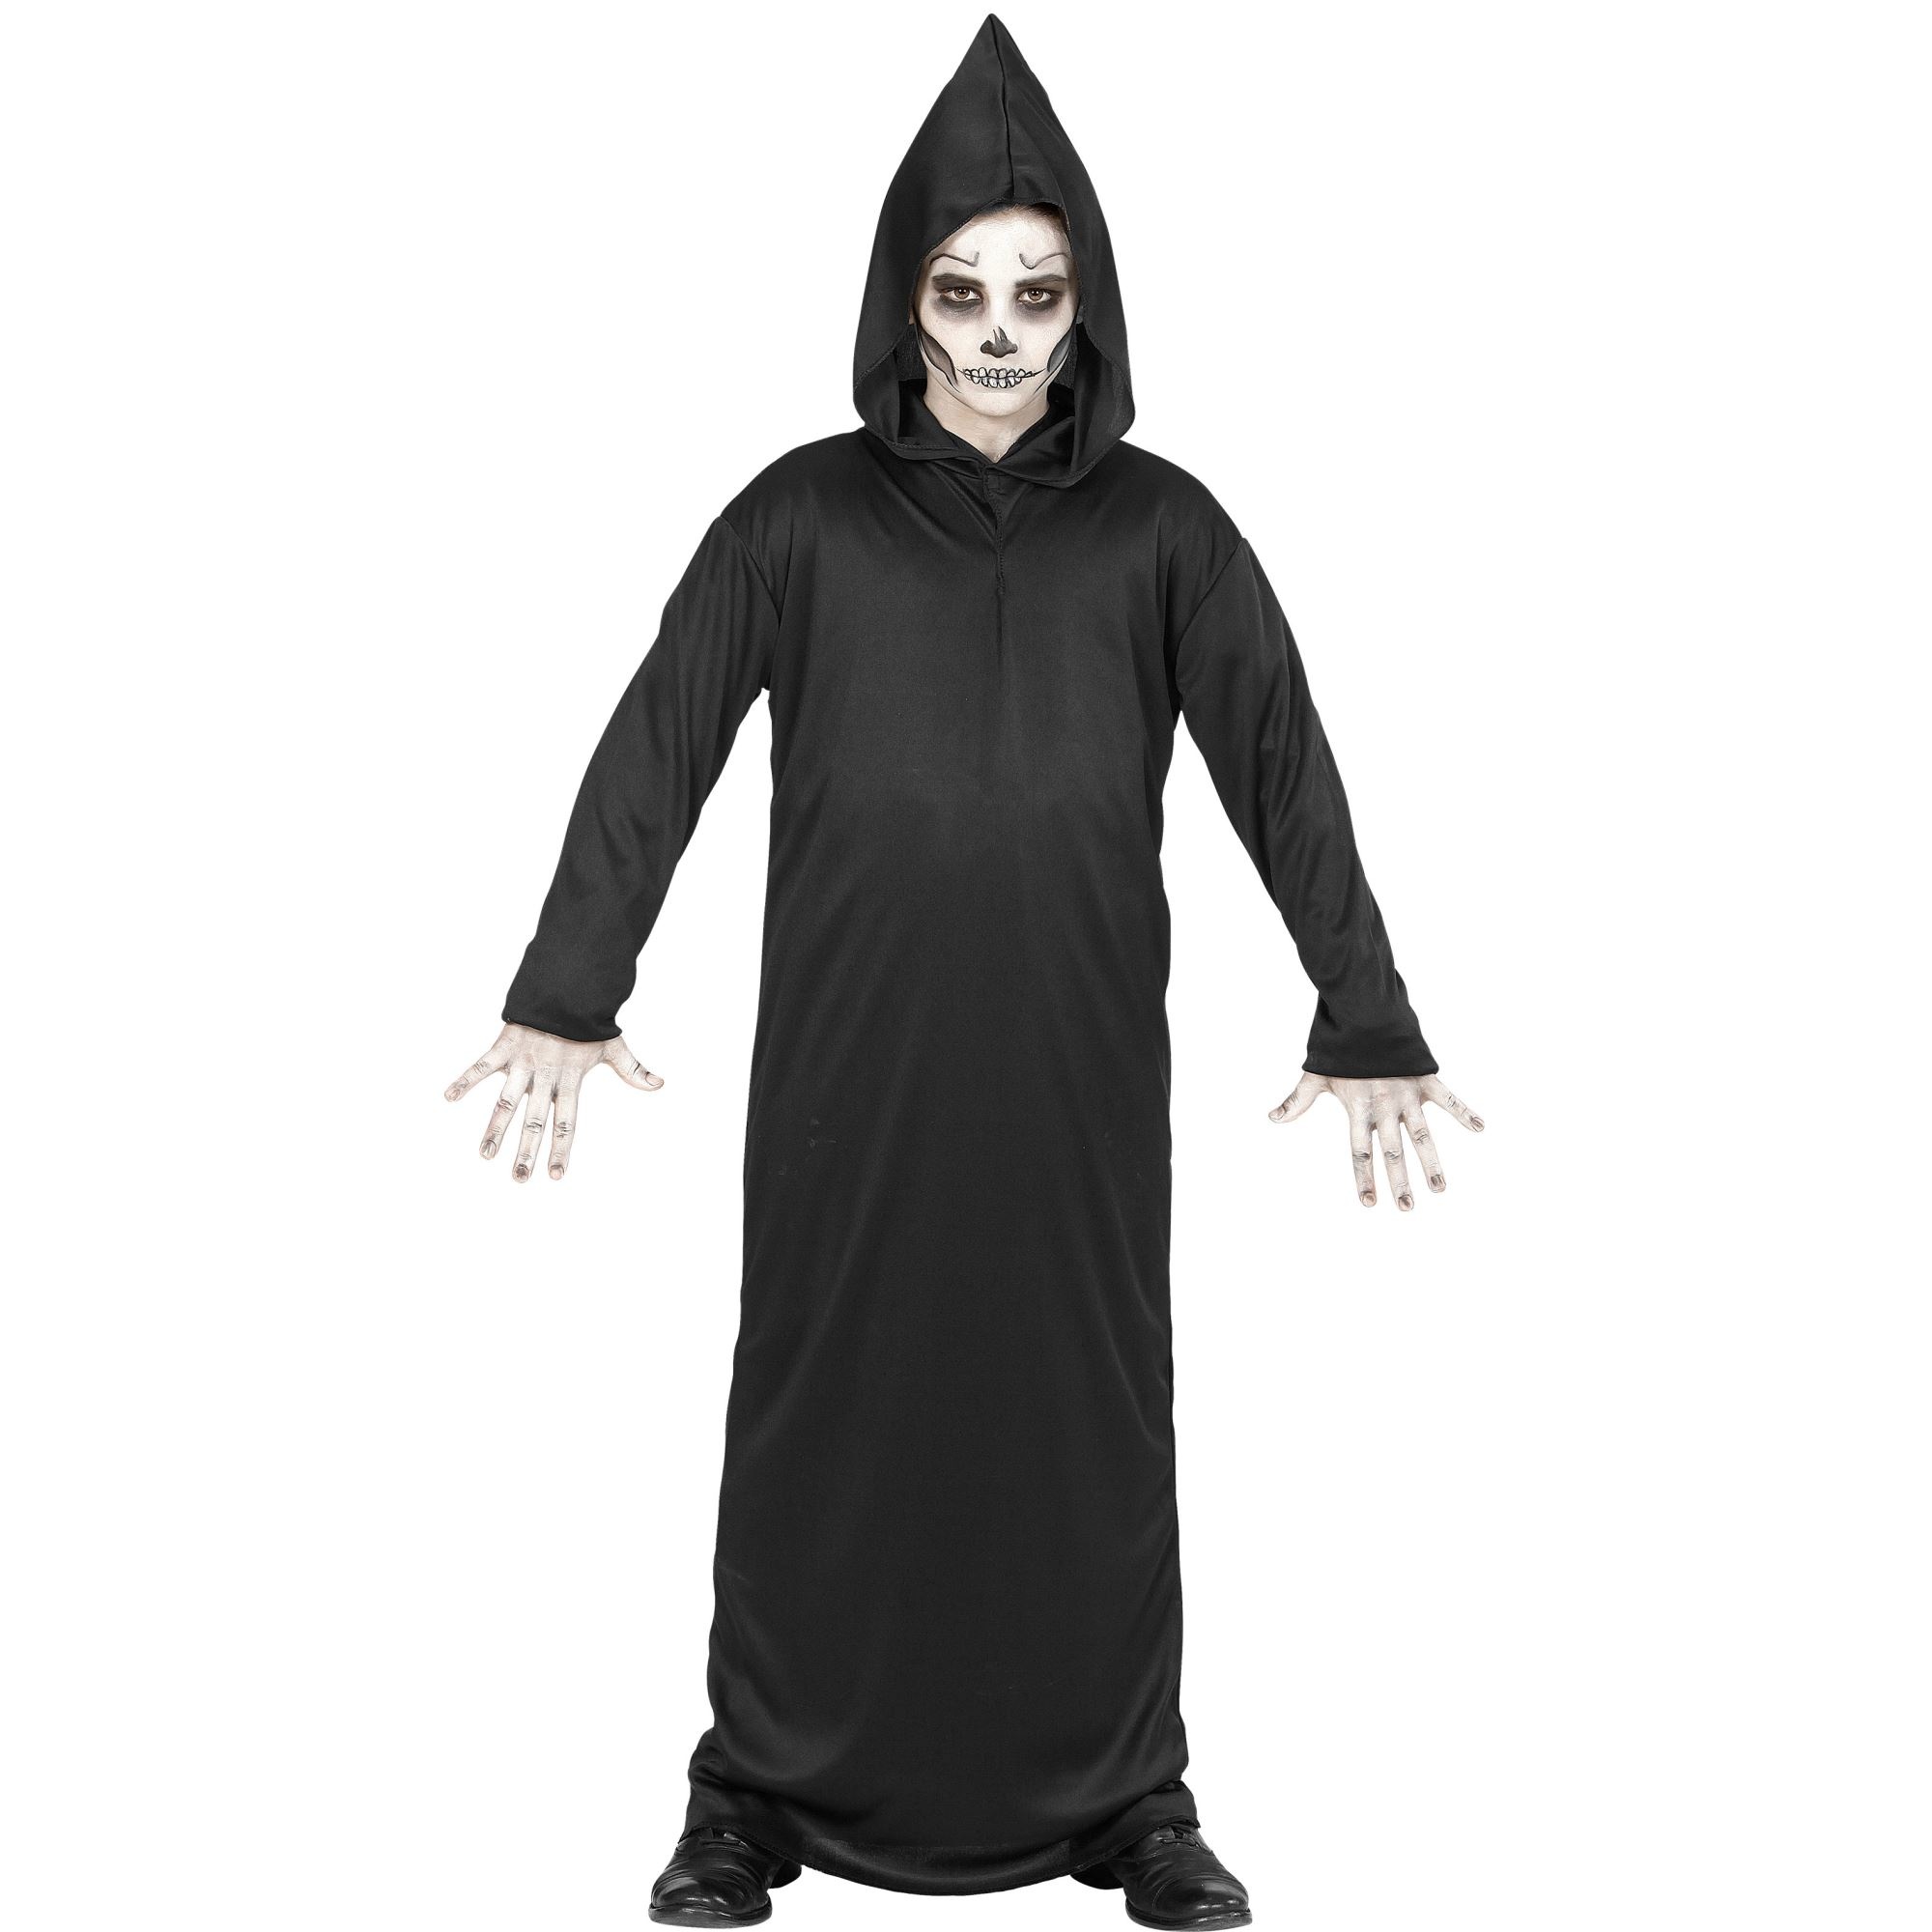 WIDMANN - Zwart reaper skelet outfit voor kinderen - 140 (8-10 jaar)